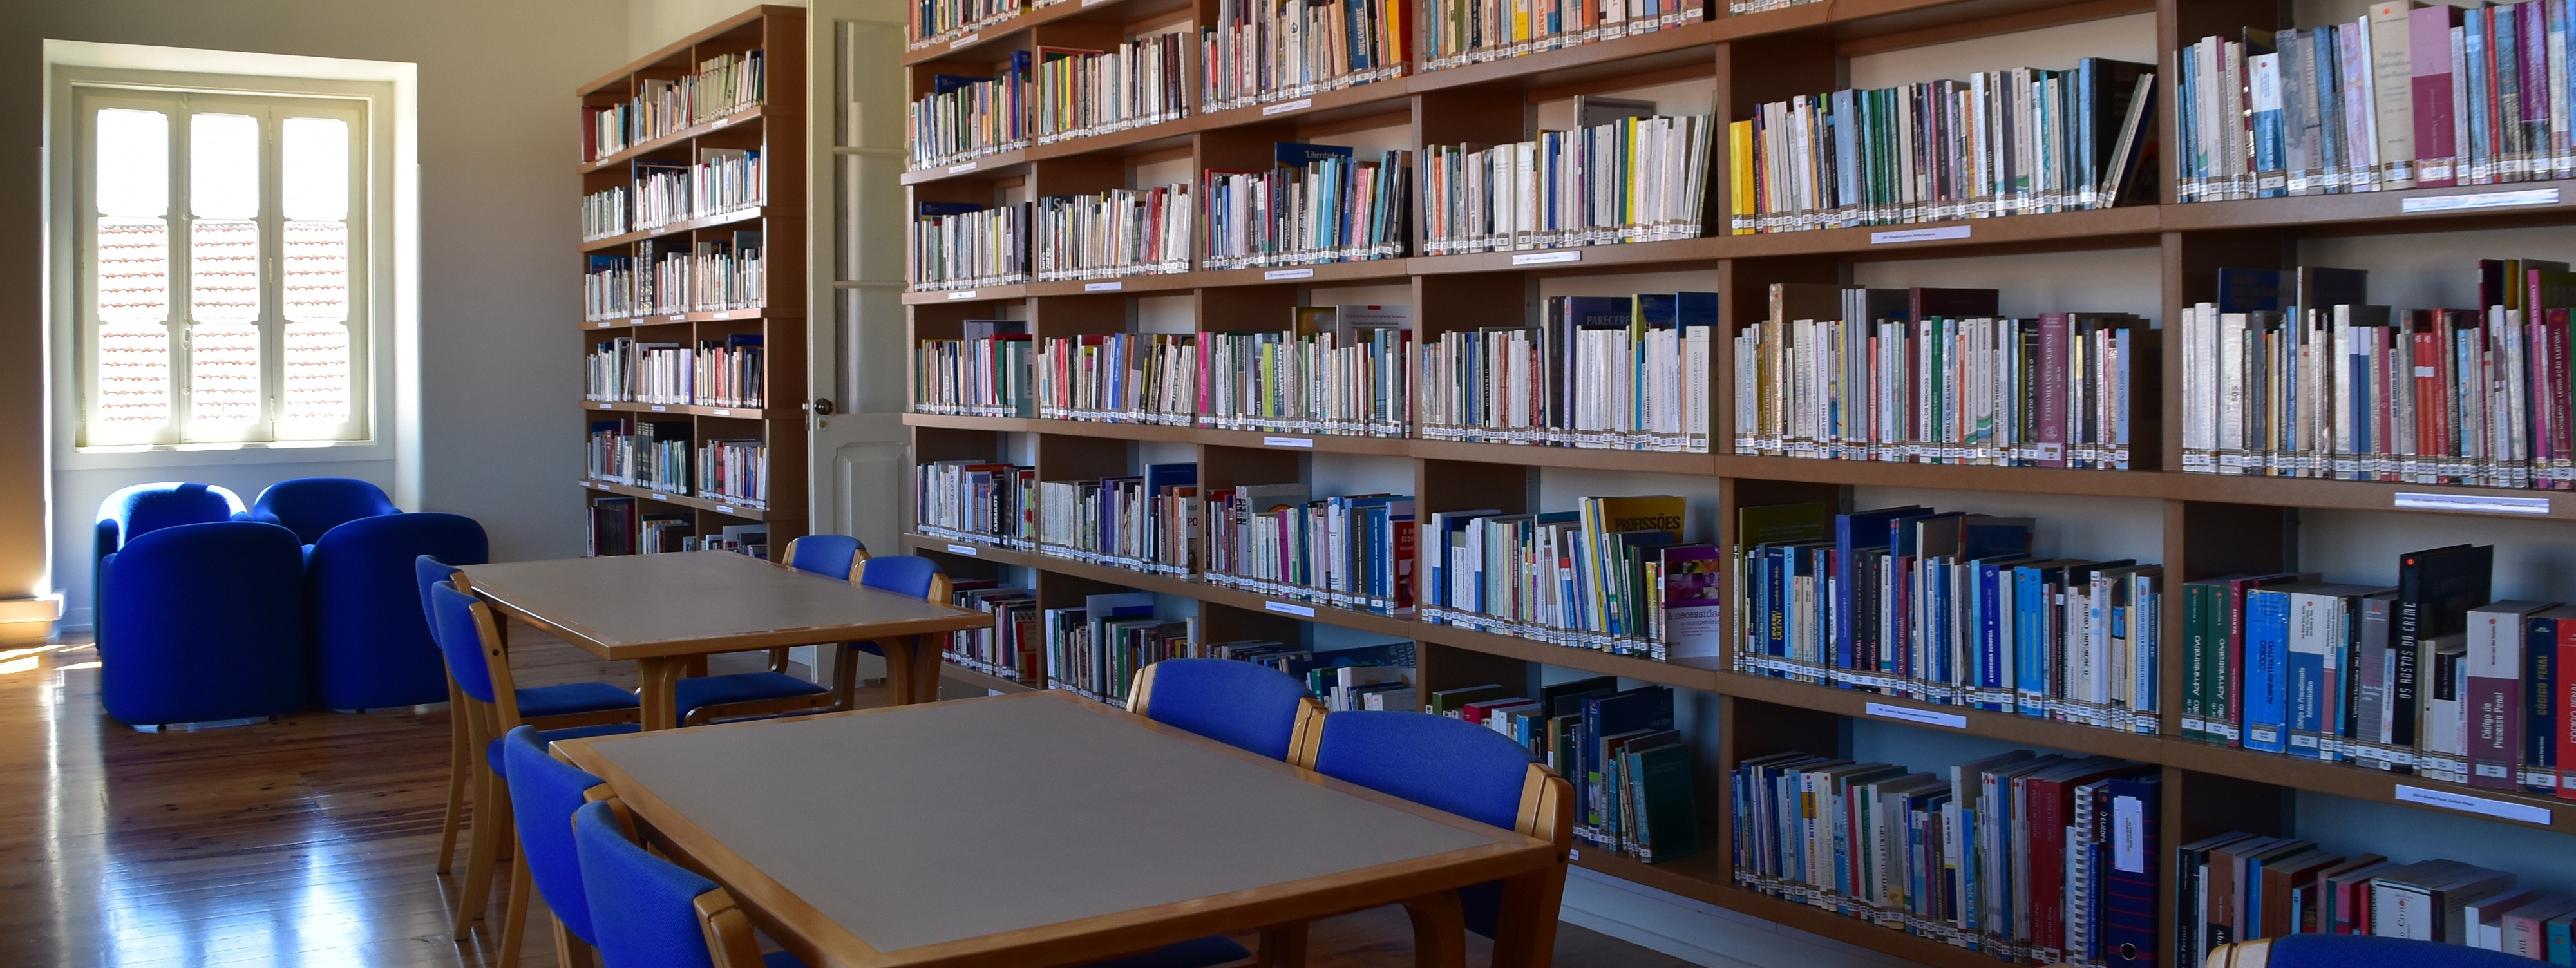 Biblioteca Municipal de Torres Vedras | Edifício Moagem Clemente 